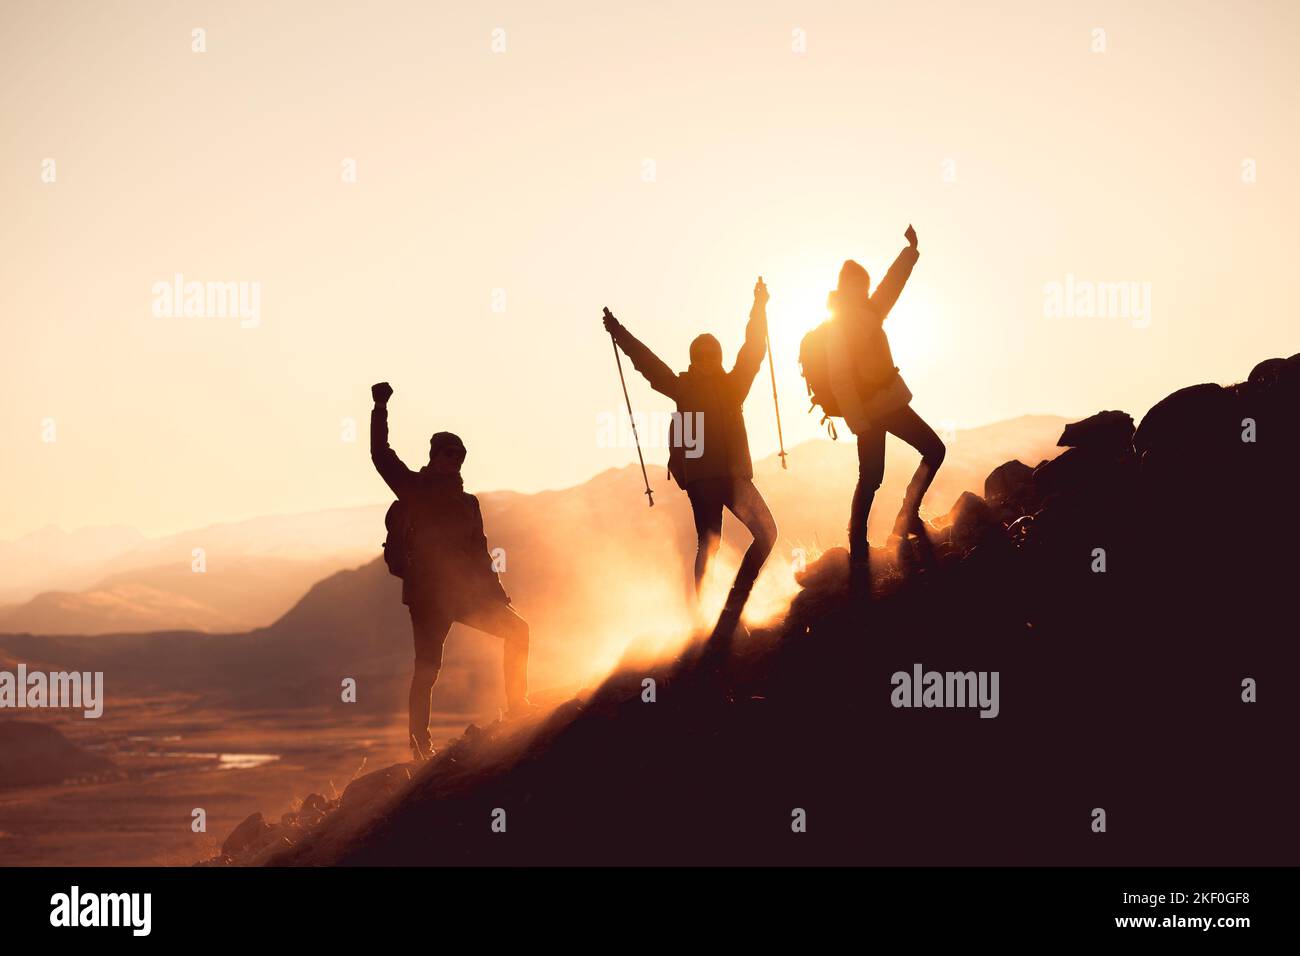 Silhouetten von drei glücklichen Wanderern, die mit erhobenen Armen am Berghang stehen Stockfoto